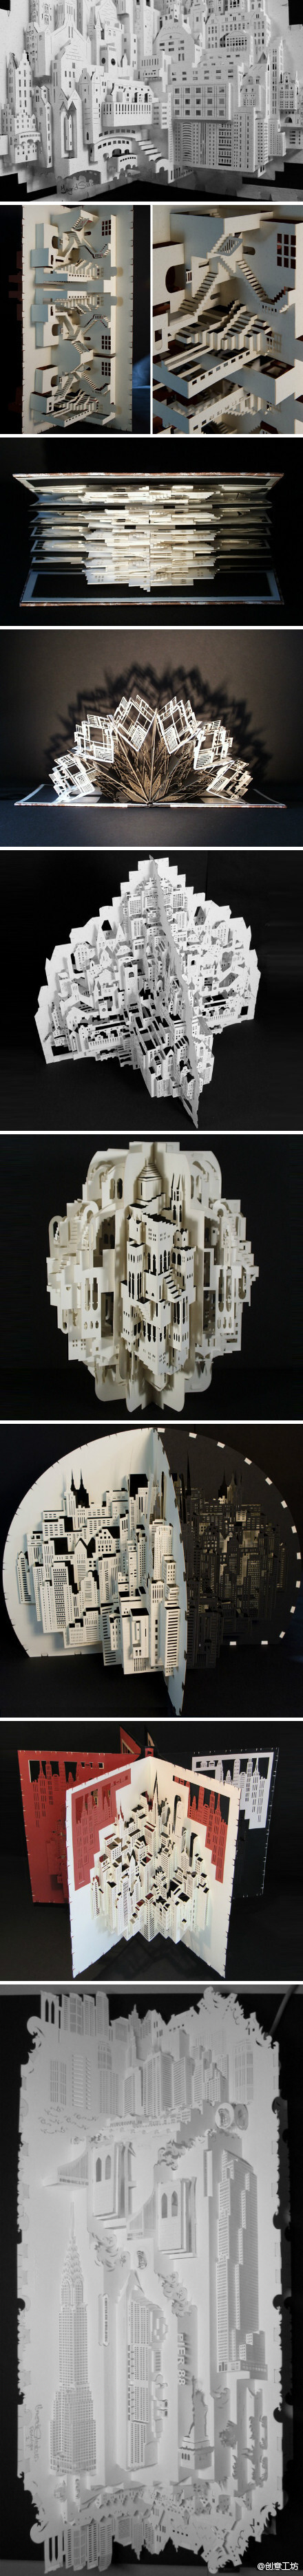 来自阿姆斯特丹的剪纸艺术家ingrid siliakus的立体剪纸建筑作品,细节